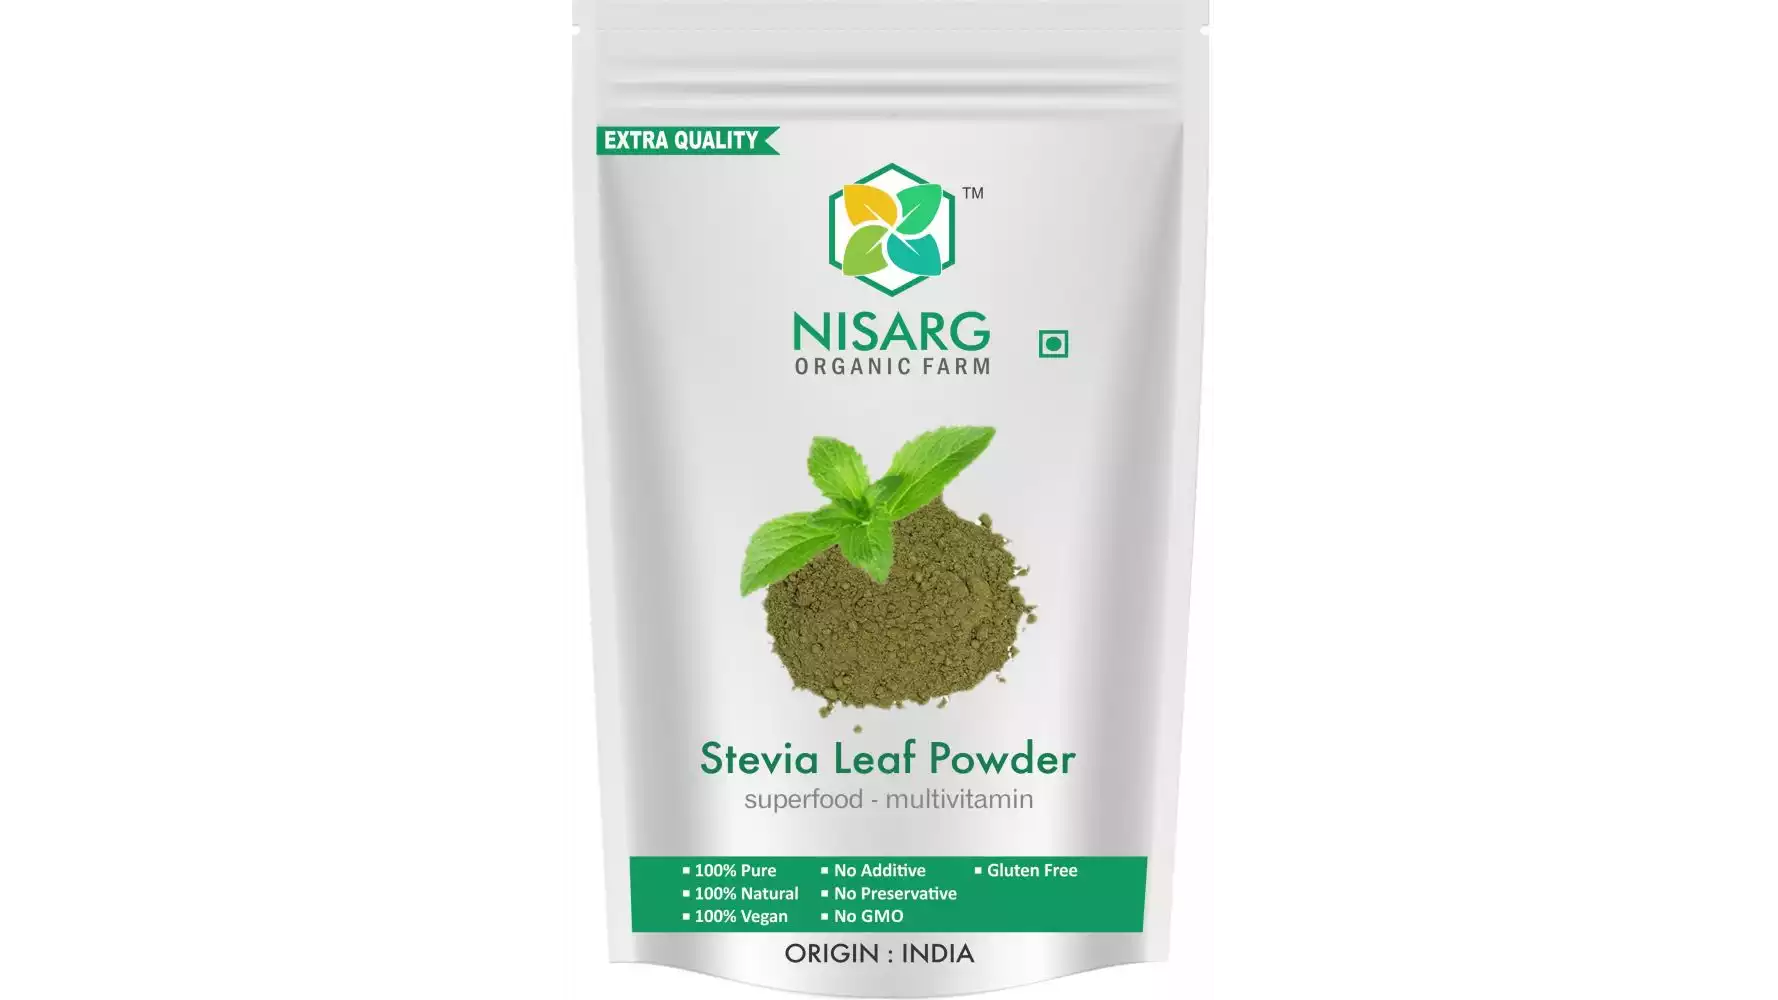 Nisarg Organic Farm Stevia Leaf Powder (500g)